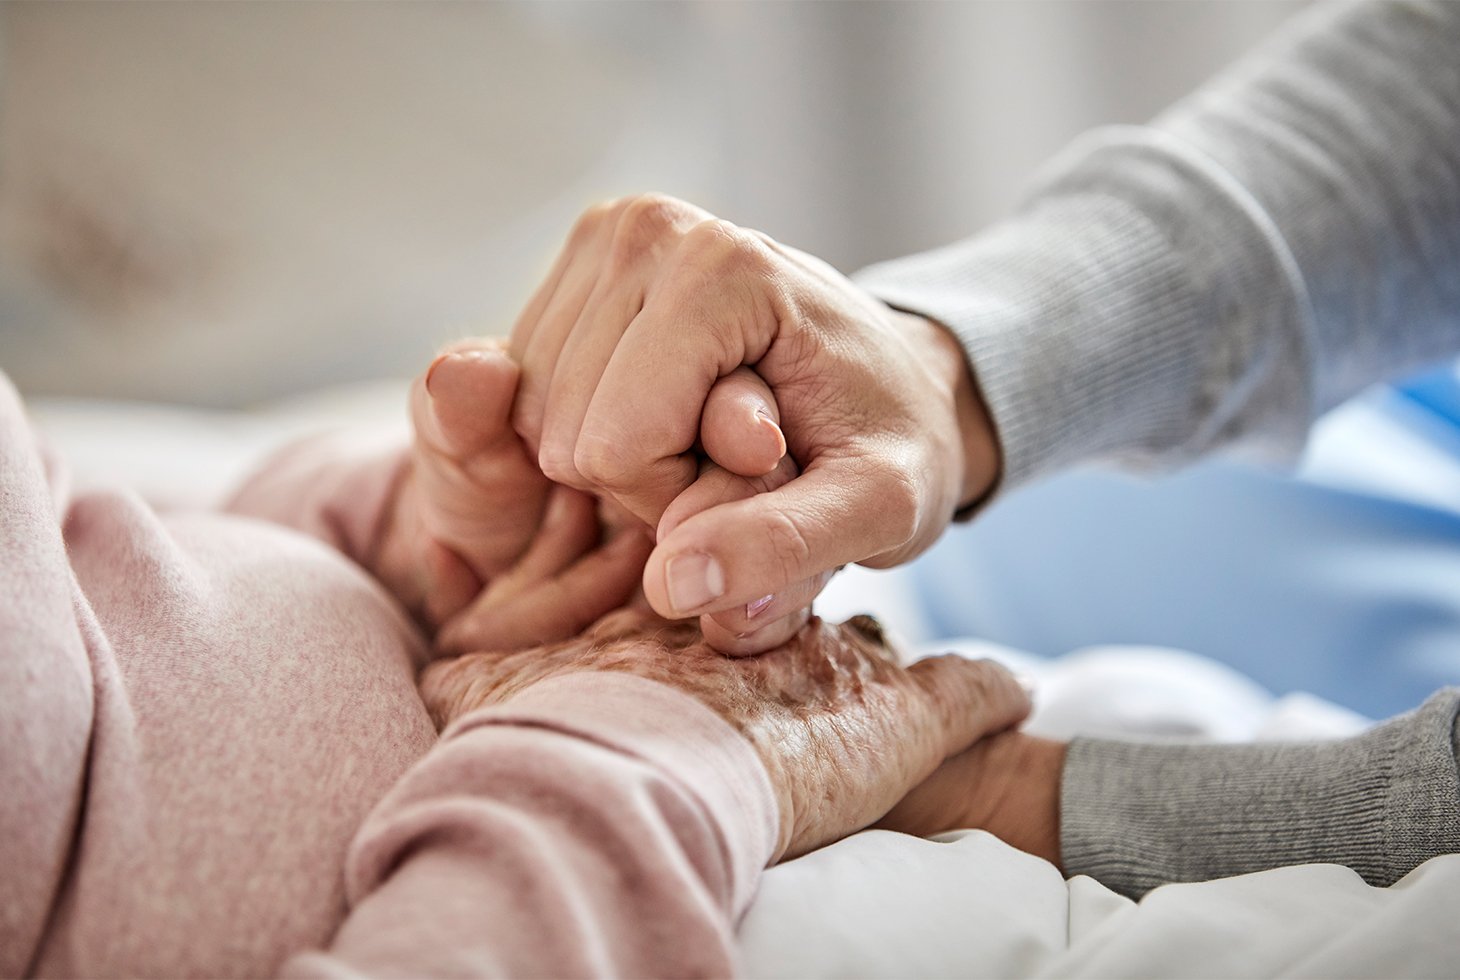 Plan cadré sur des mains : celles d’un proche tenant les mains d’une personne âgée en signe de réconfort. Visuel pour illustrer le rôle des aidants familiaux dans l’accompagnement d’une personne dépendante